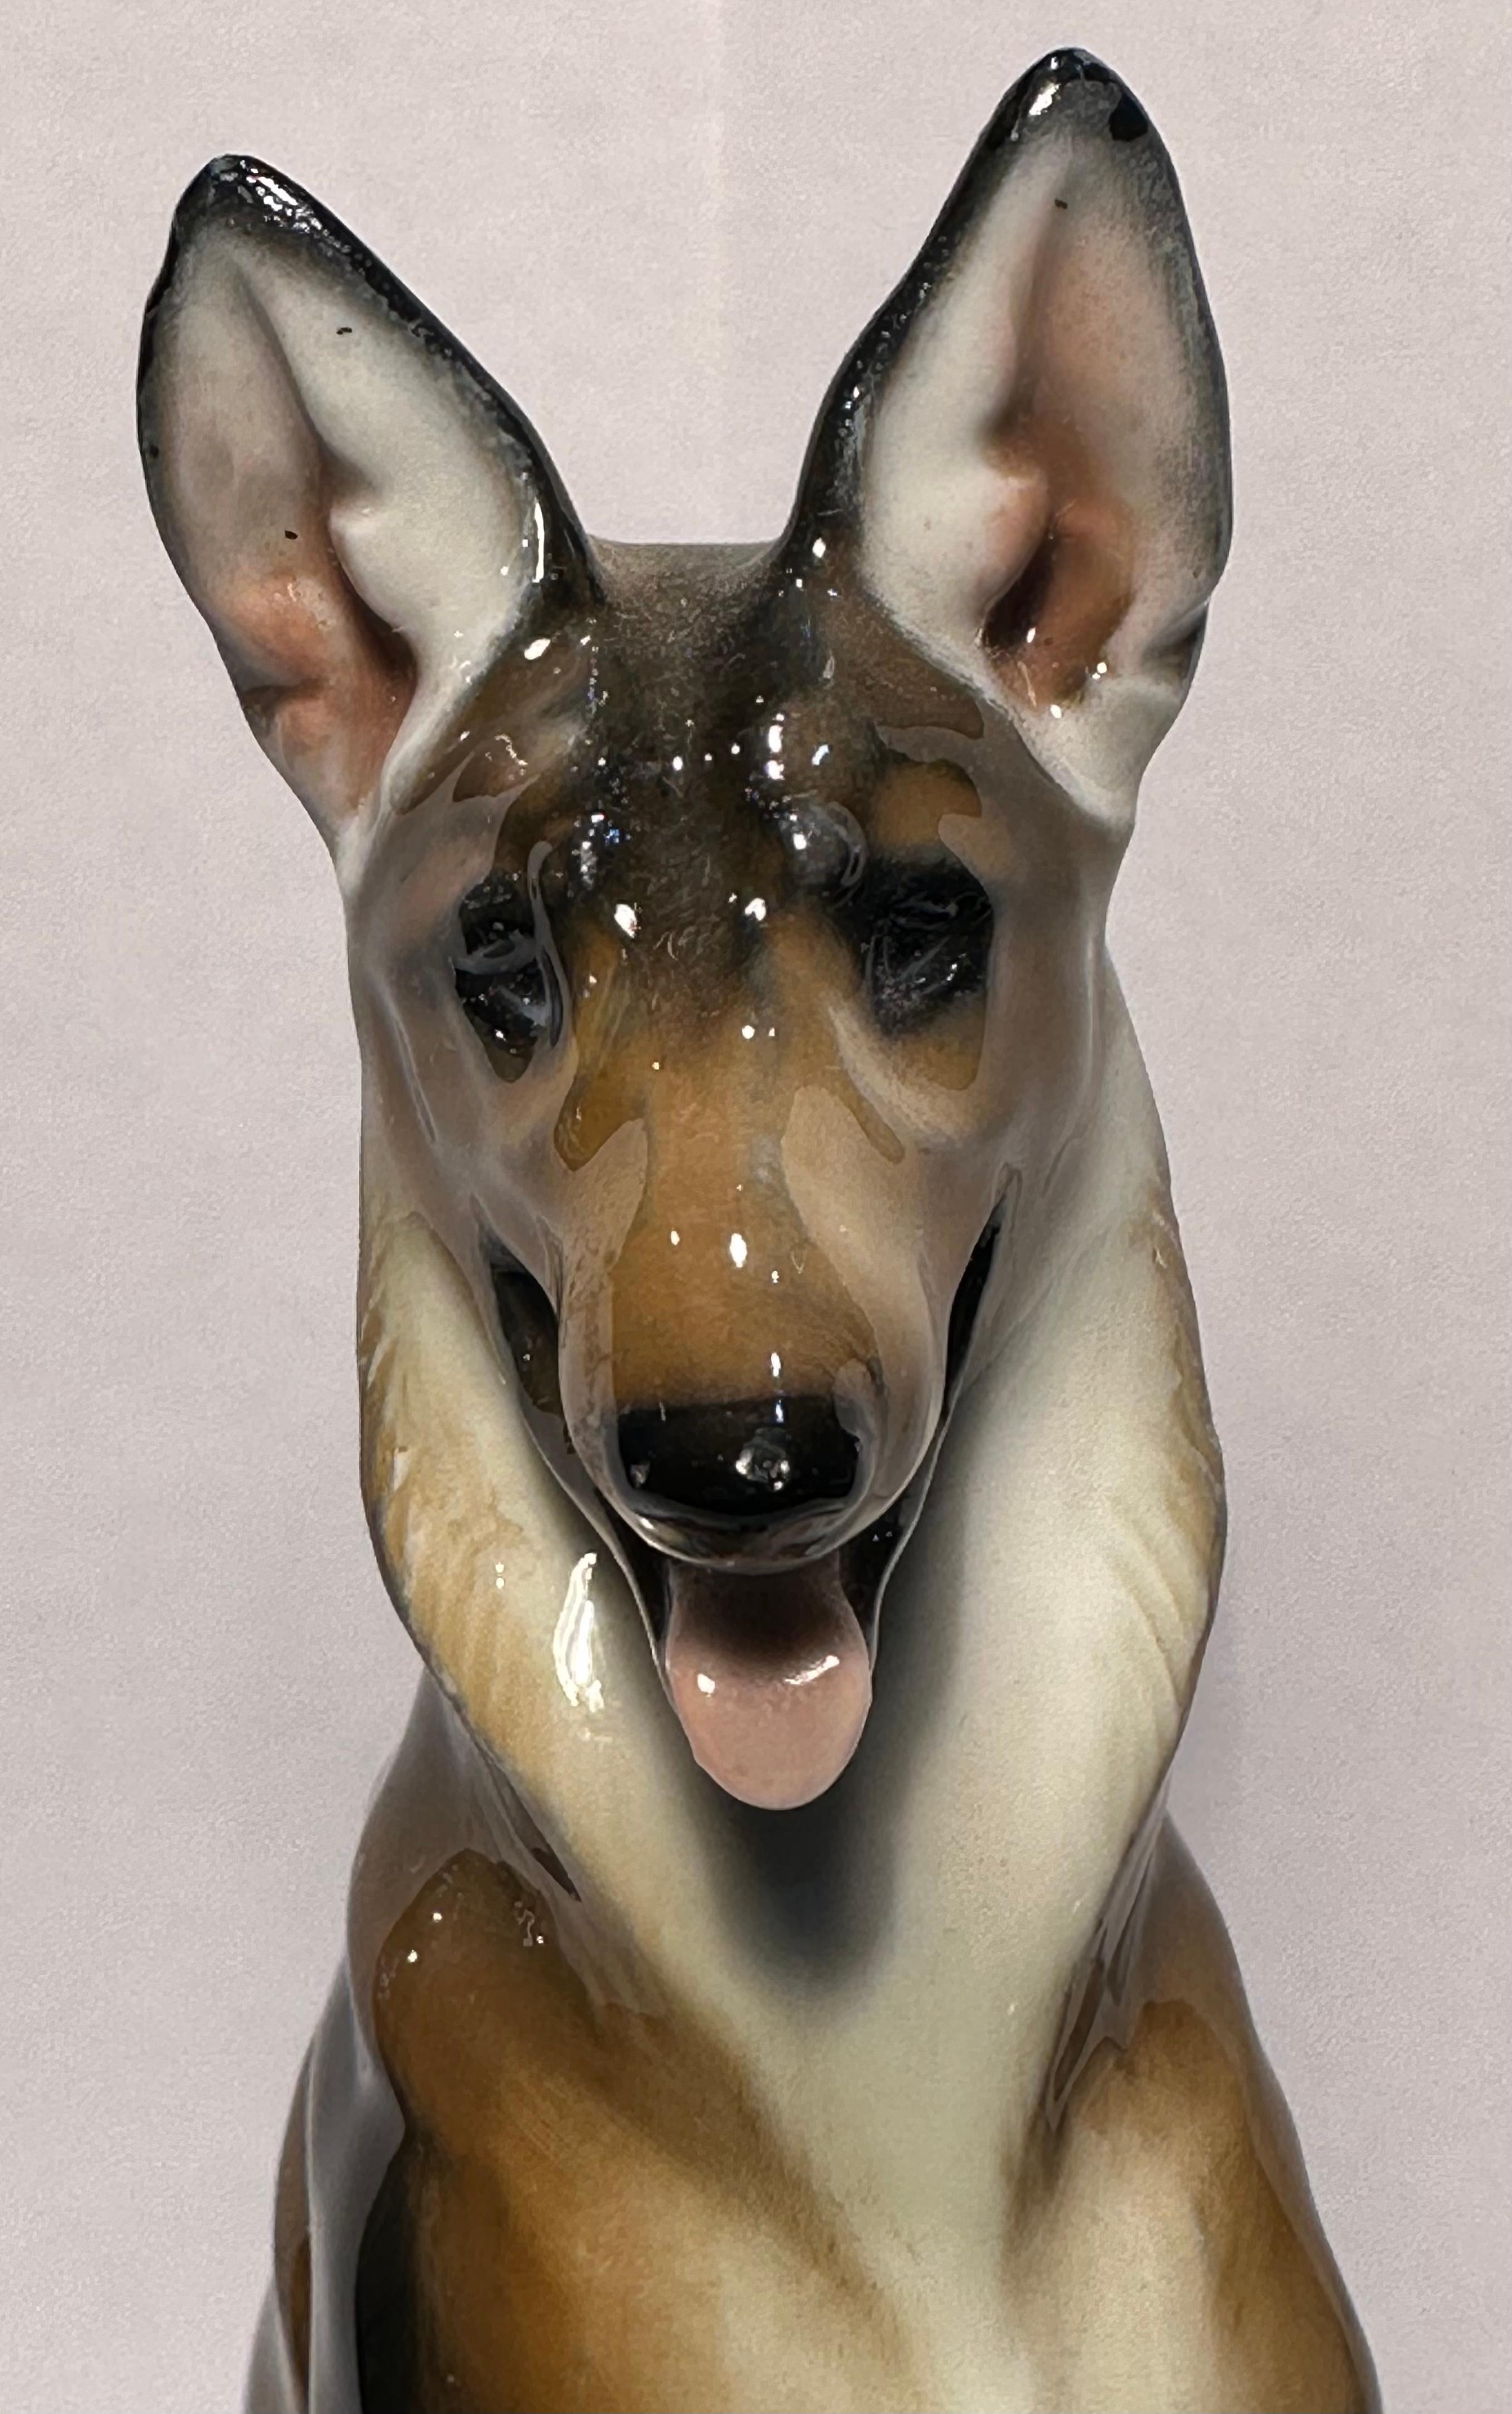 Figurine de chien de berger allemand en porcelaine de Rosenthal de la plus haute qualité, retirée du marché, faite et peinte à la main en Allemagne par l'artiste Theodor Karner pour la manufacture de porcelaine de Rosenthal. Le chien a été fabriqué